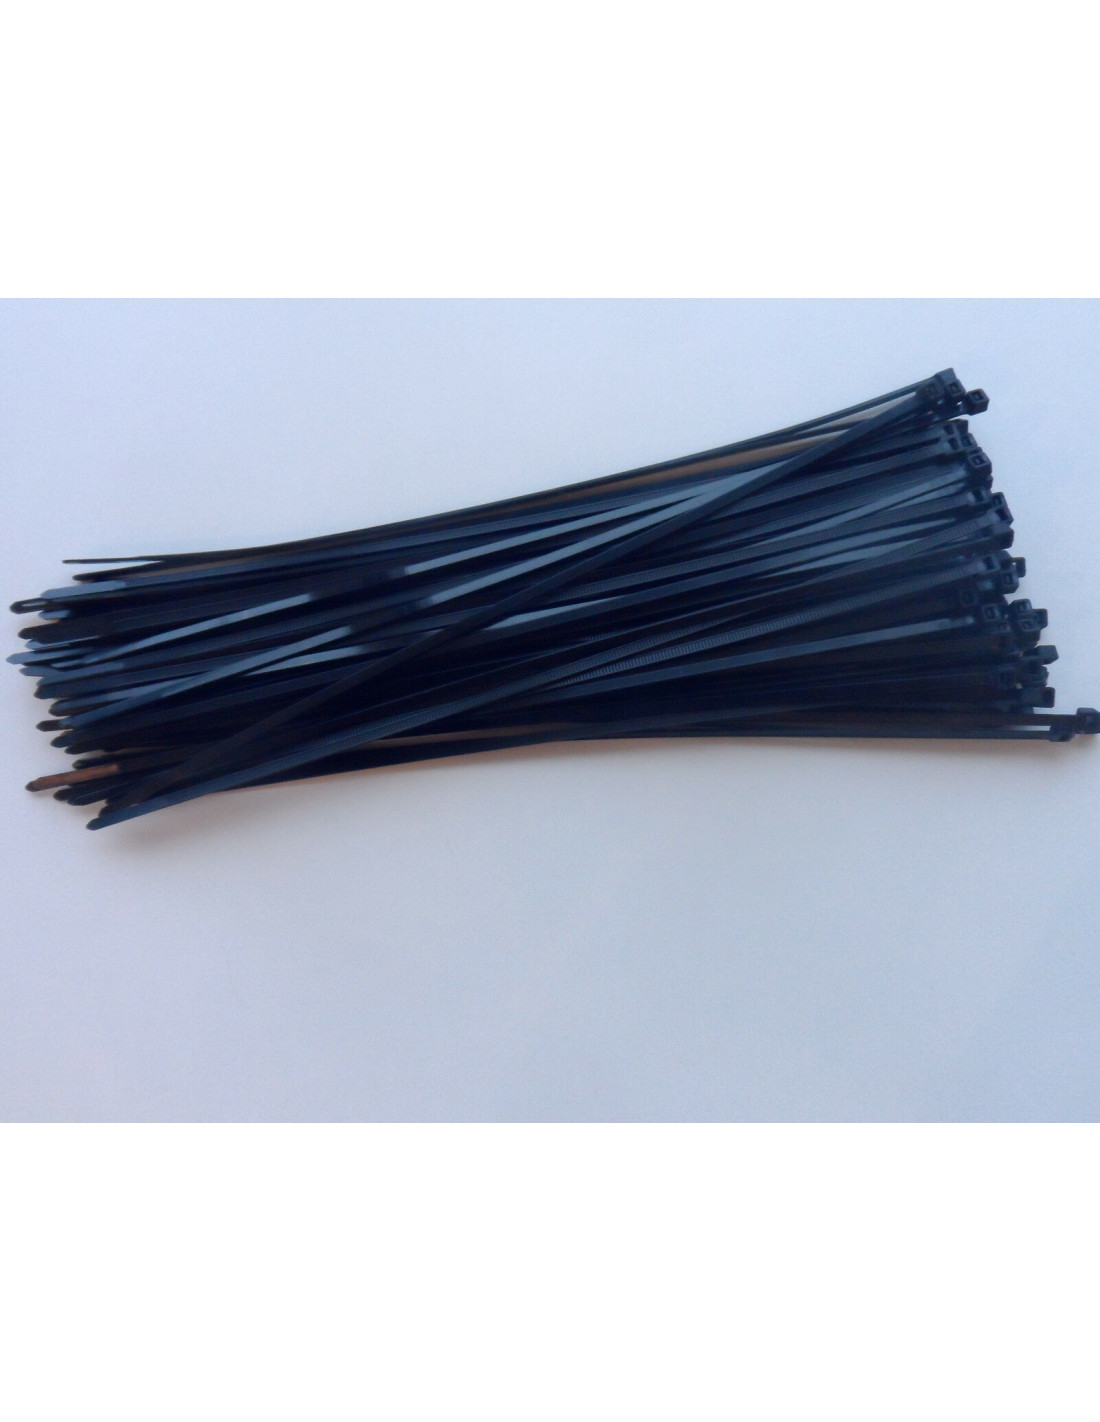 100 colliers rislan plastic noir 280 mm attaches cables